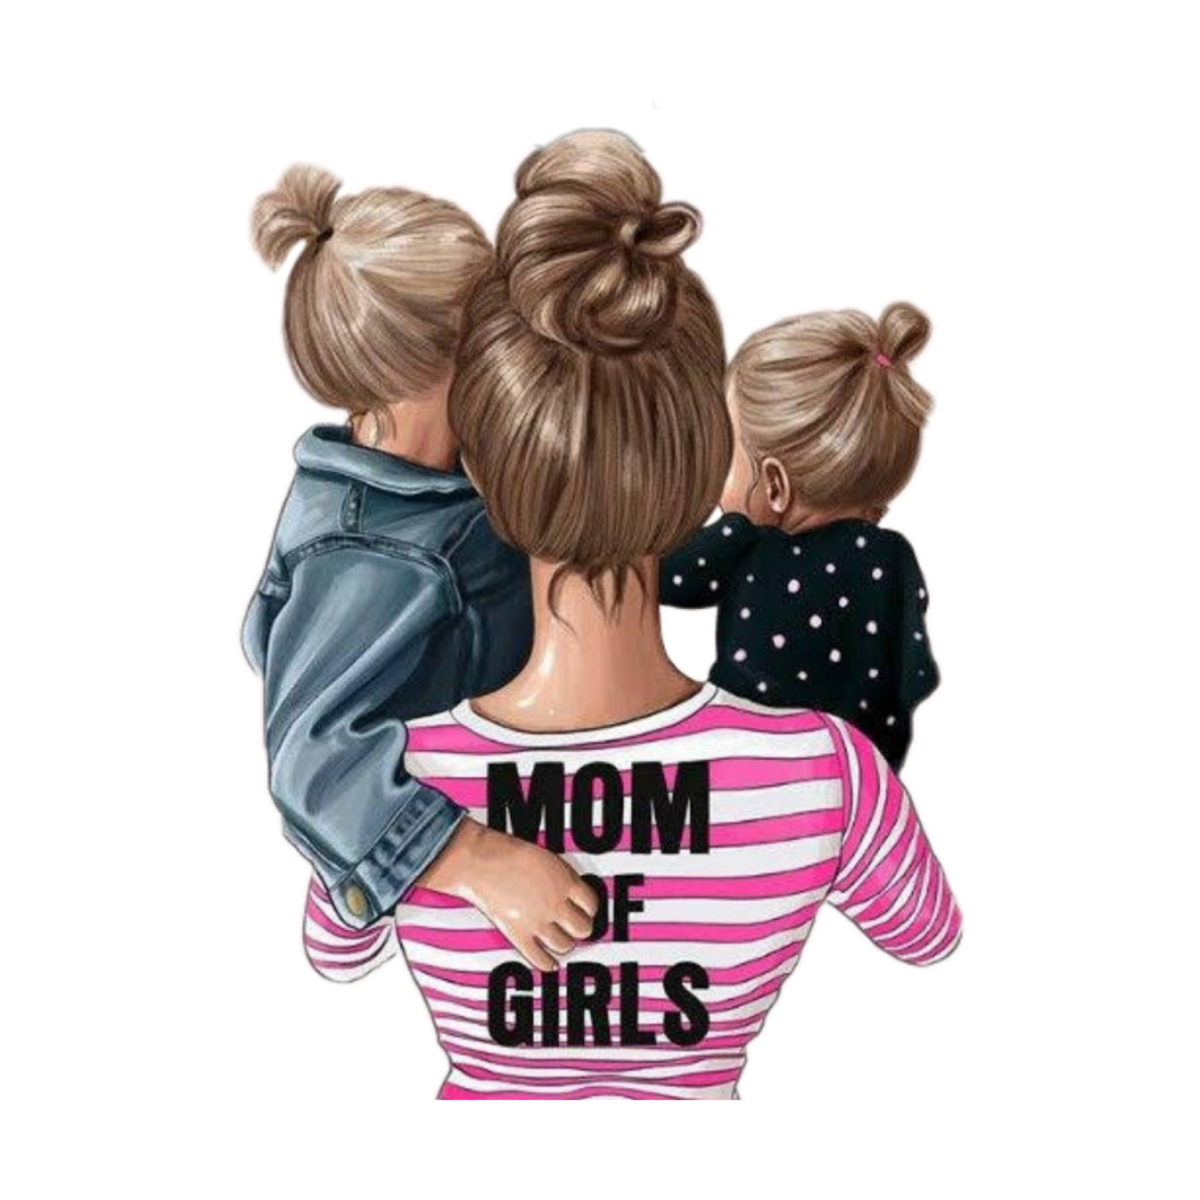 Картинка на телефон мама. Модные иллюстрации мама и дети. Мама с двумя девочками. Иллюстрация мама с двумя дочками.